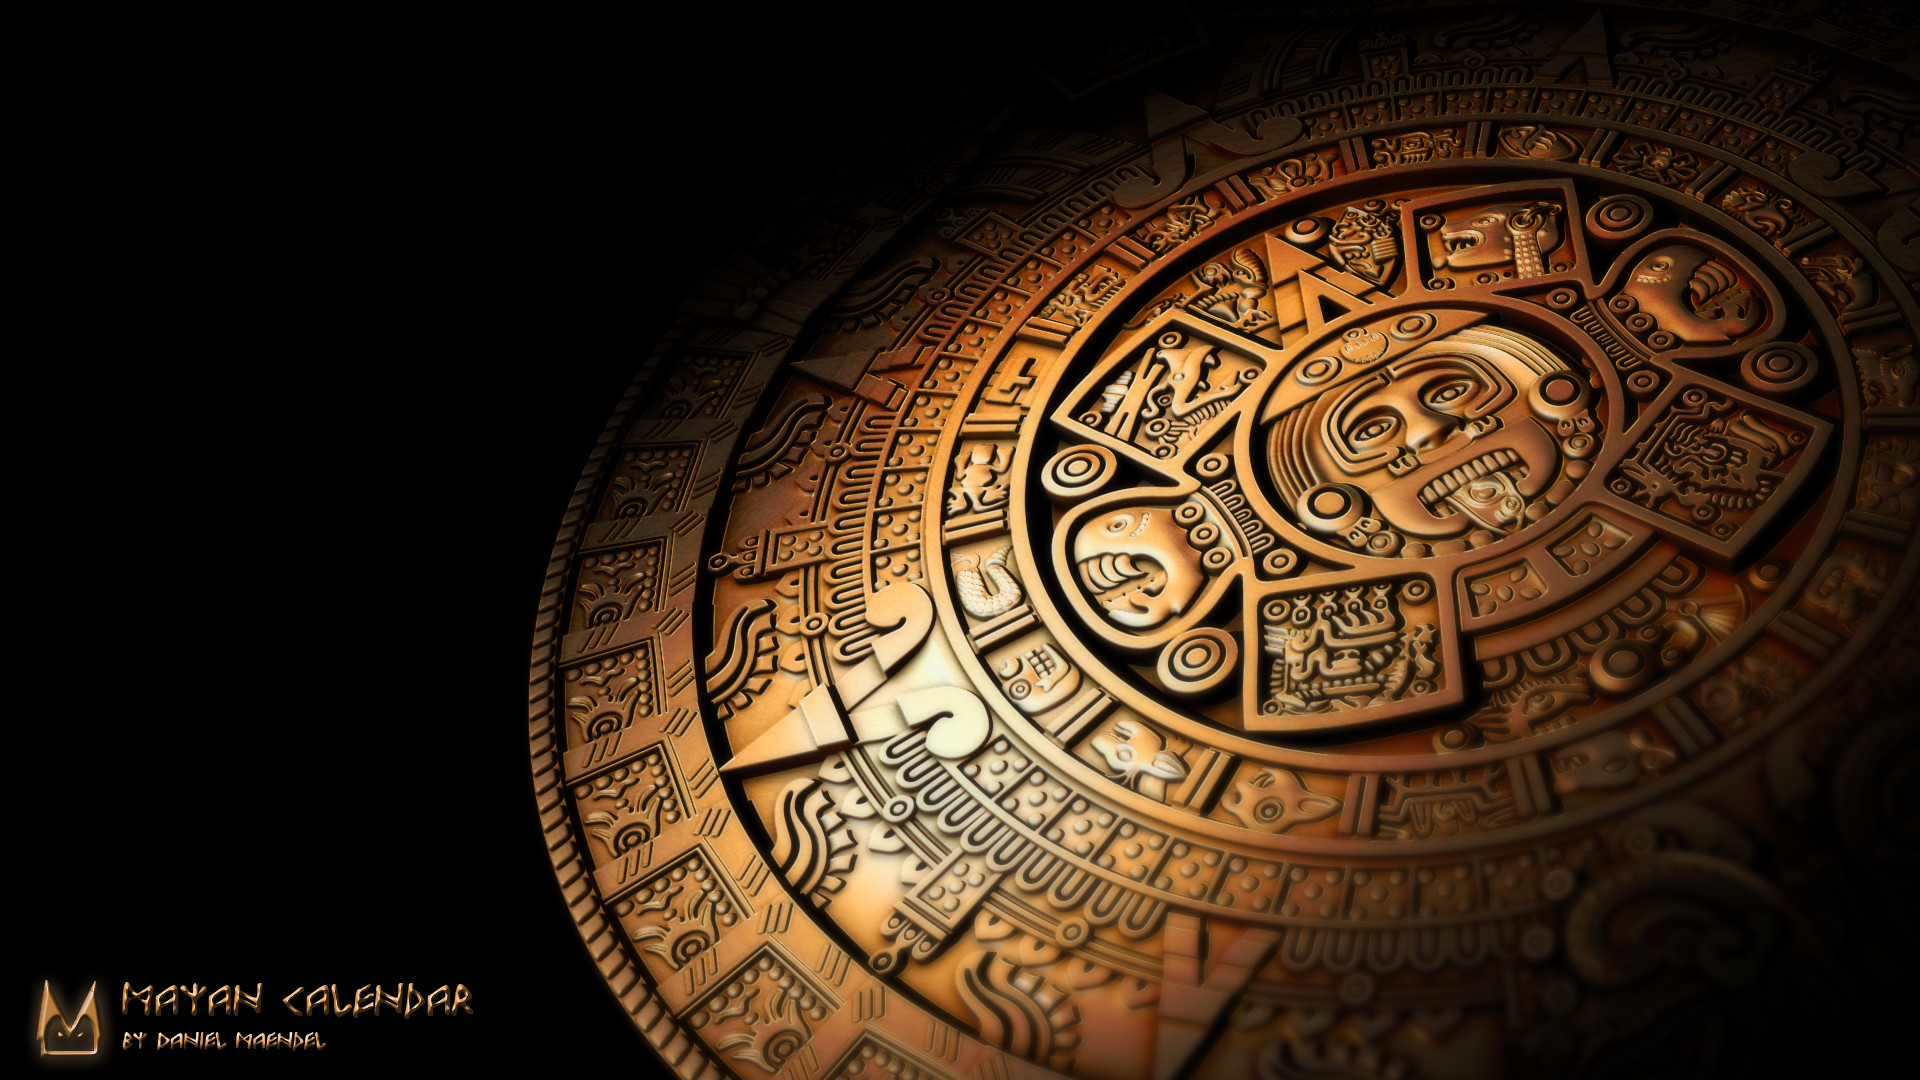 Aztec Calendar Wallpaper Backgrounds